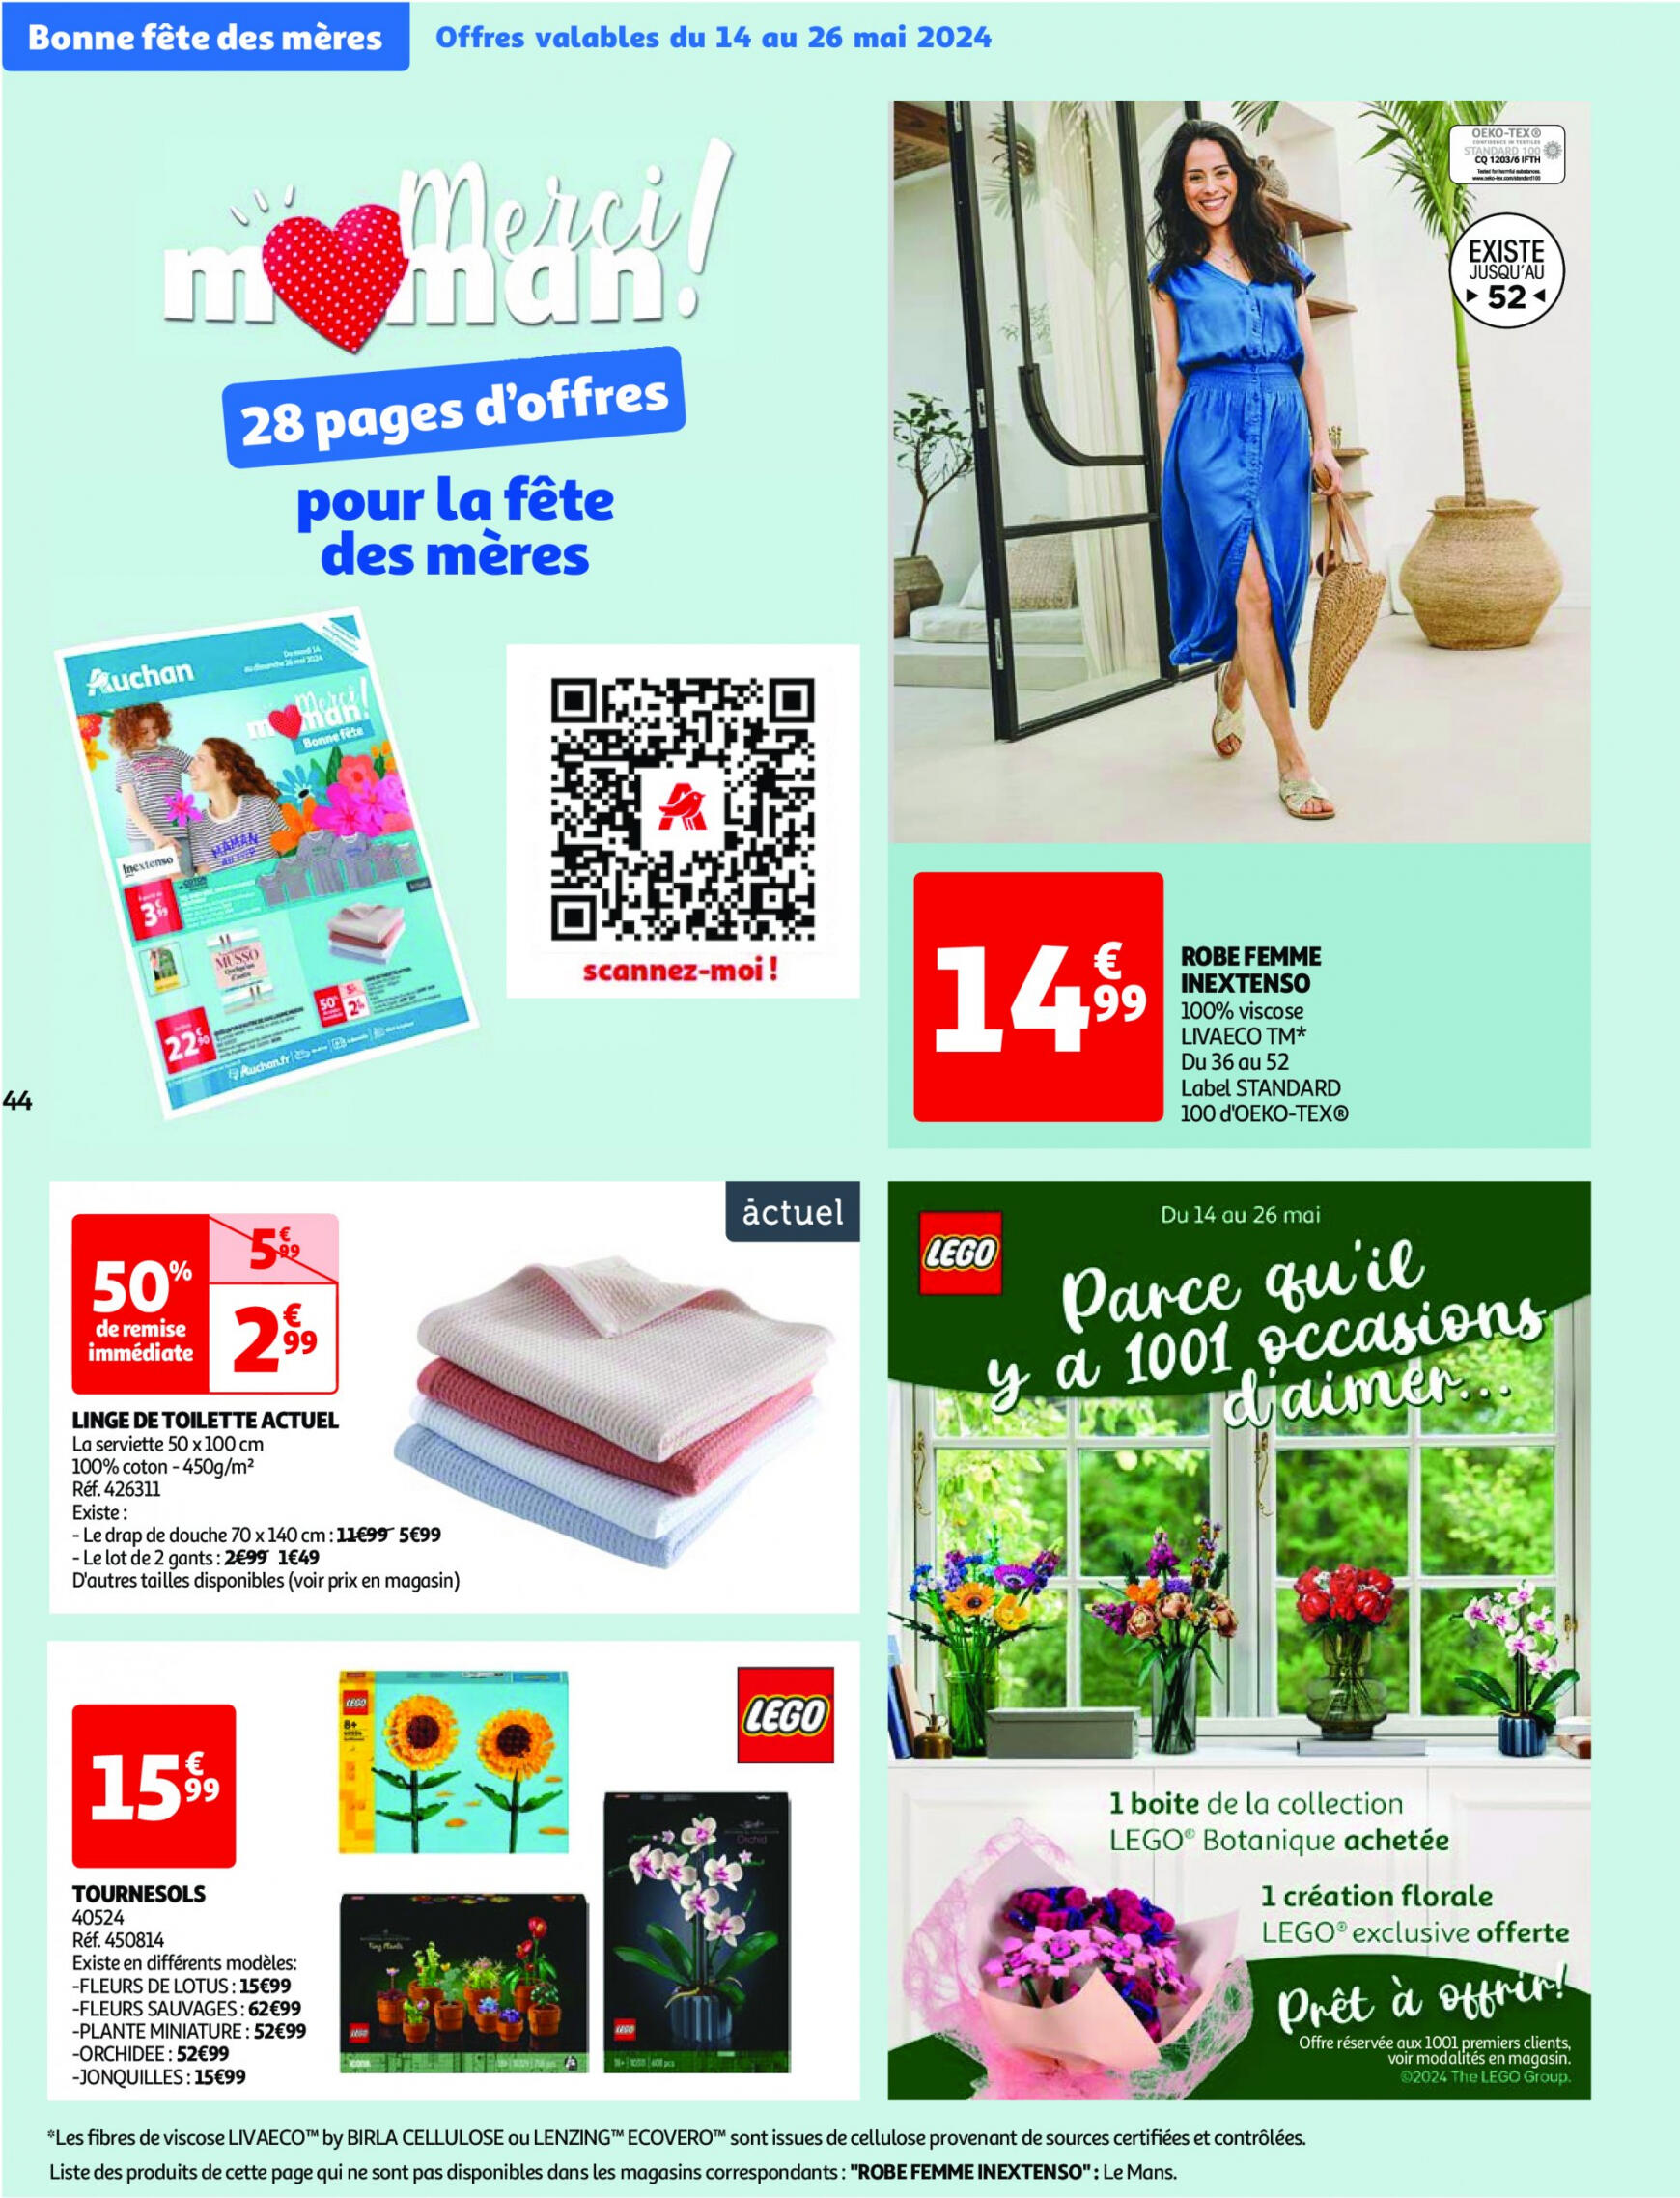 auchan - Auchan - Nos surgelés ont tout bon folder huidig 14.05. - 21.05. - page: 44